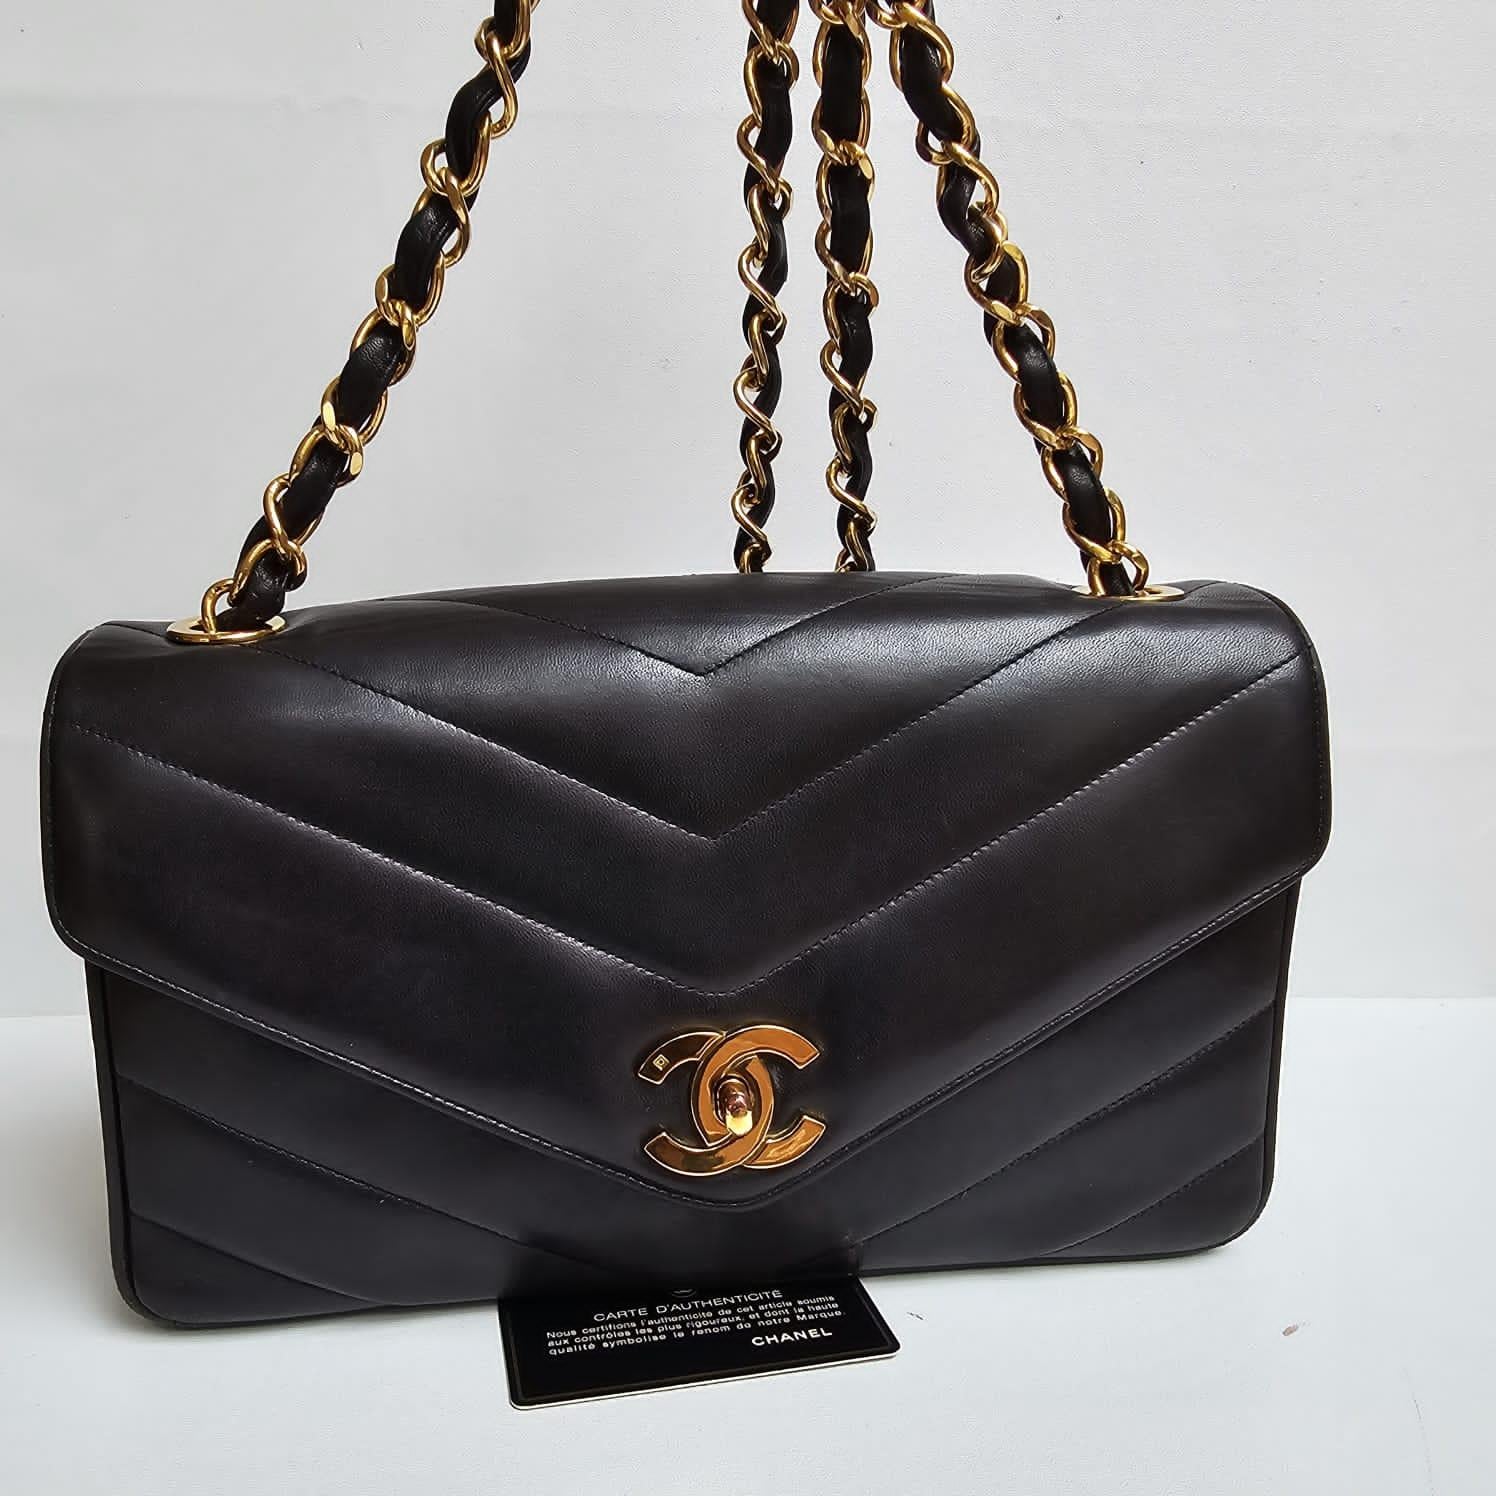 Seltene Chanel Vintage schwarz Chevron Lammfell gesteppt Klappe Tasche. Insgesamt in großem Vintage-Zustand, mit kleinen Reibungen an den Ecken. Serie #3. Kommt mit Holo-Aufkleber und Karte.